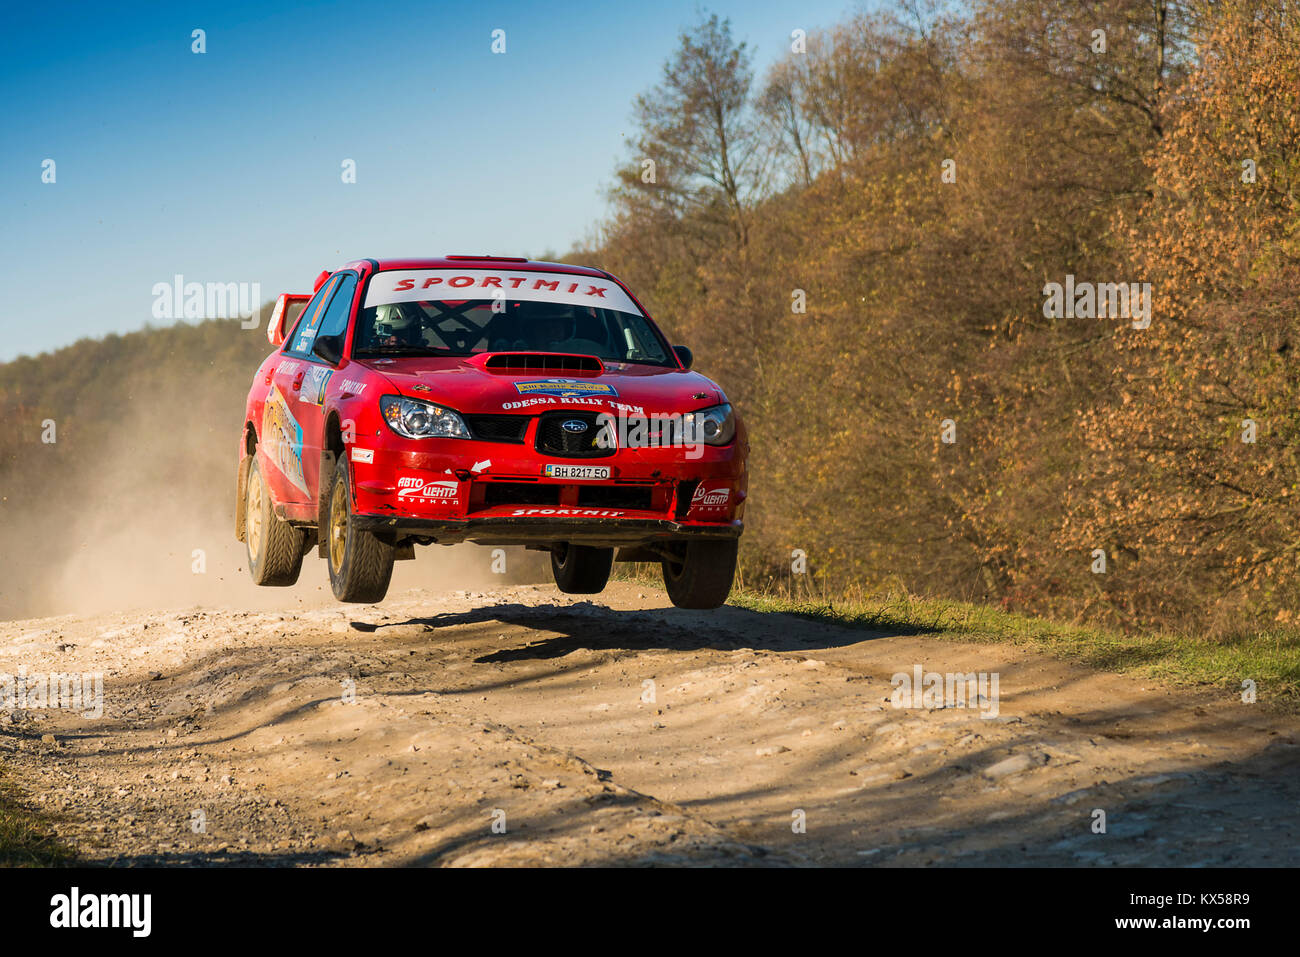 Lviv, Ucraina - 1 Novembre 2015: Oleg Sobolew la Subaru Impreza WRX STI compete al Rally annuale Galizia Foto Stock